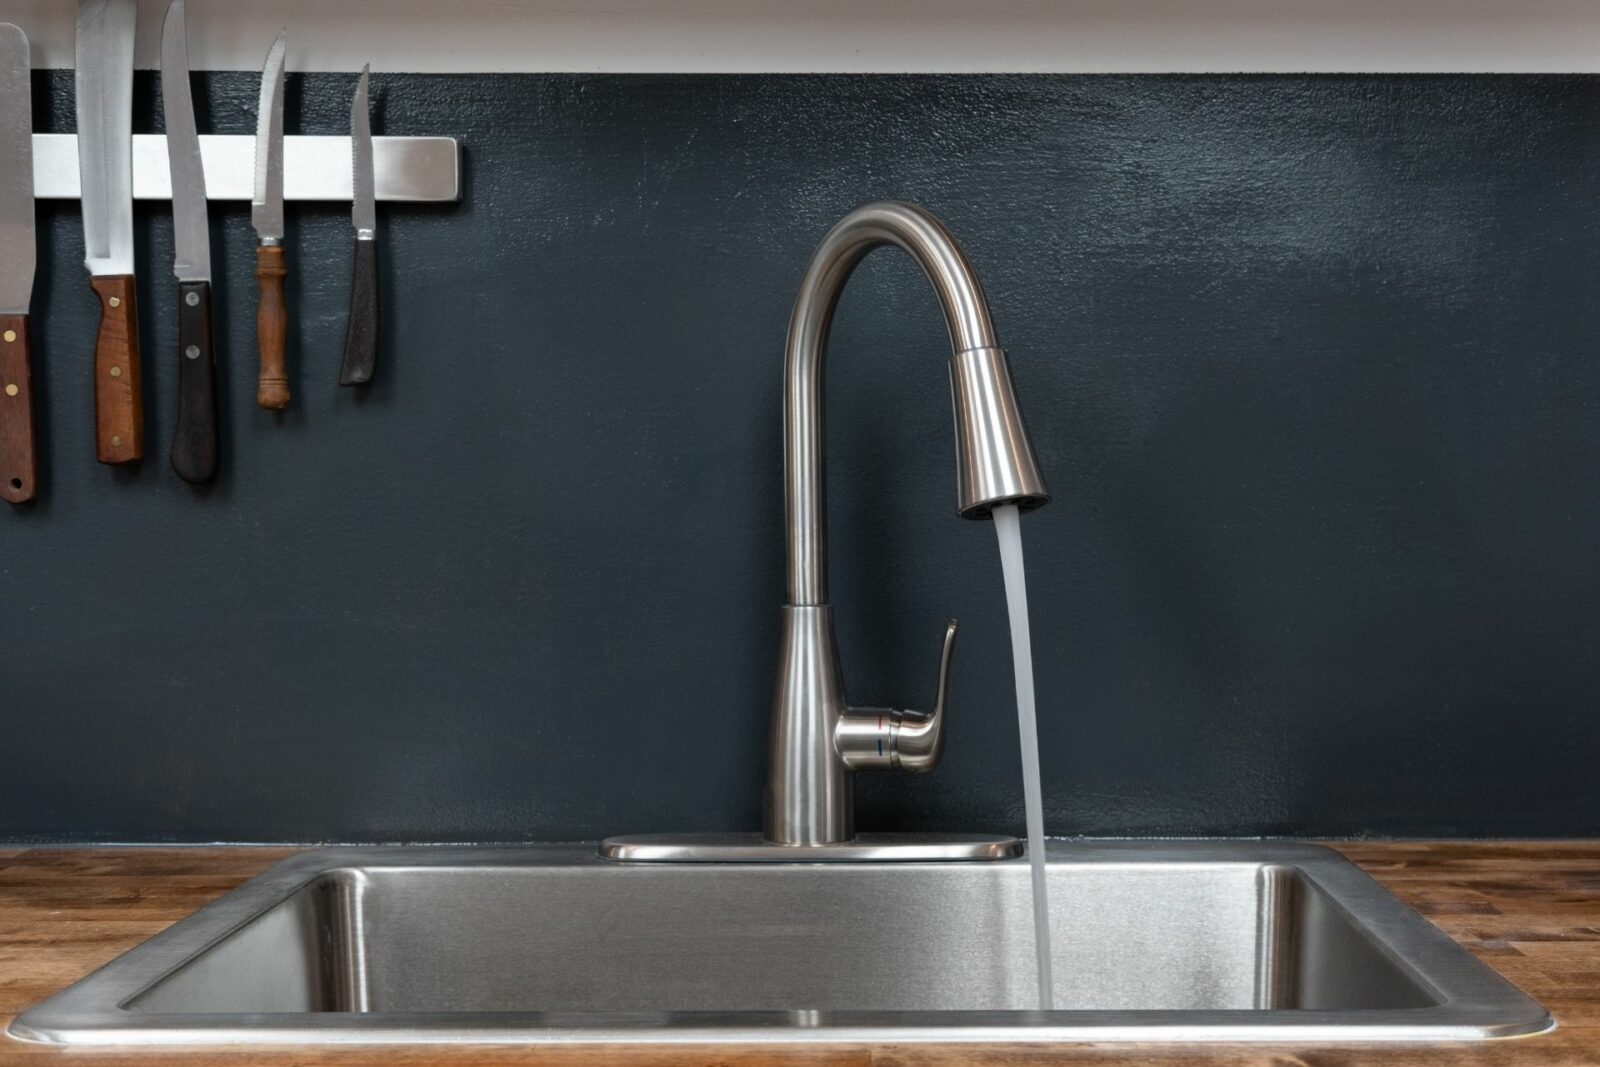 Water Pressure in Kitchen Sink